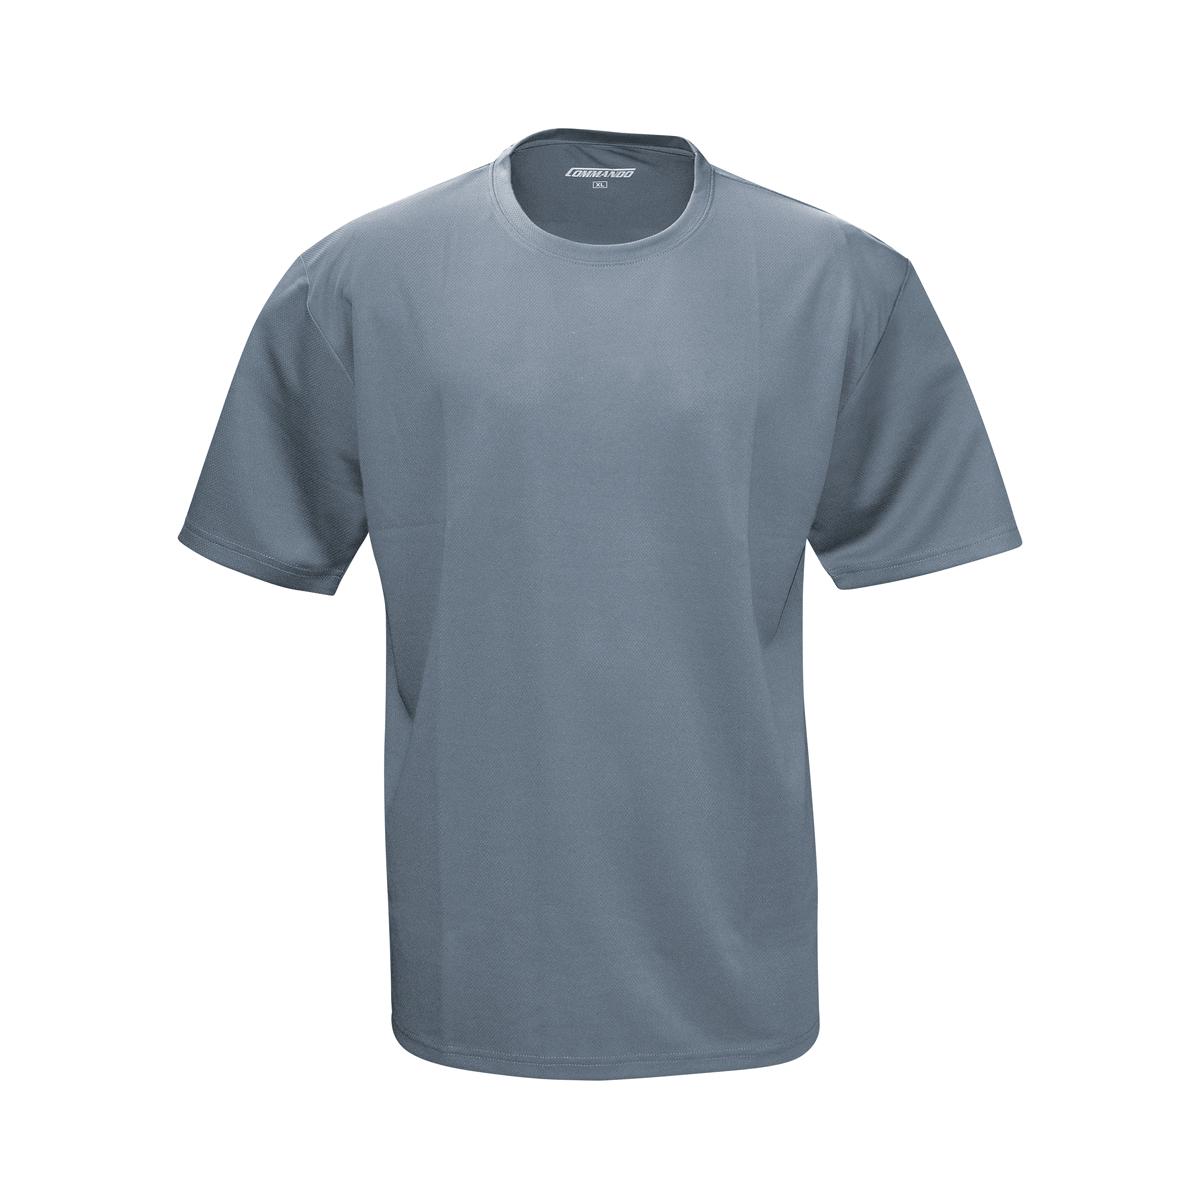 Männer T-Shirt Quickdry grau